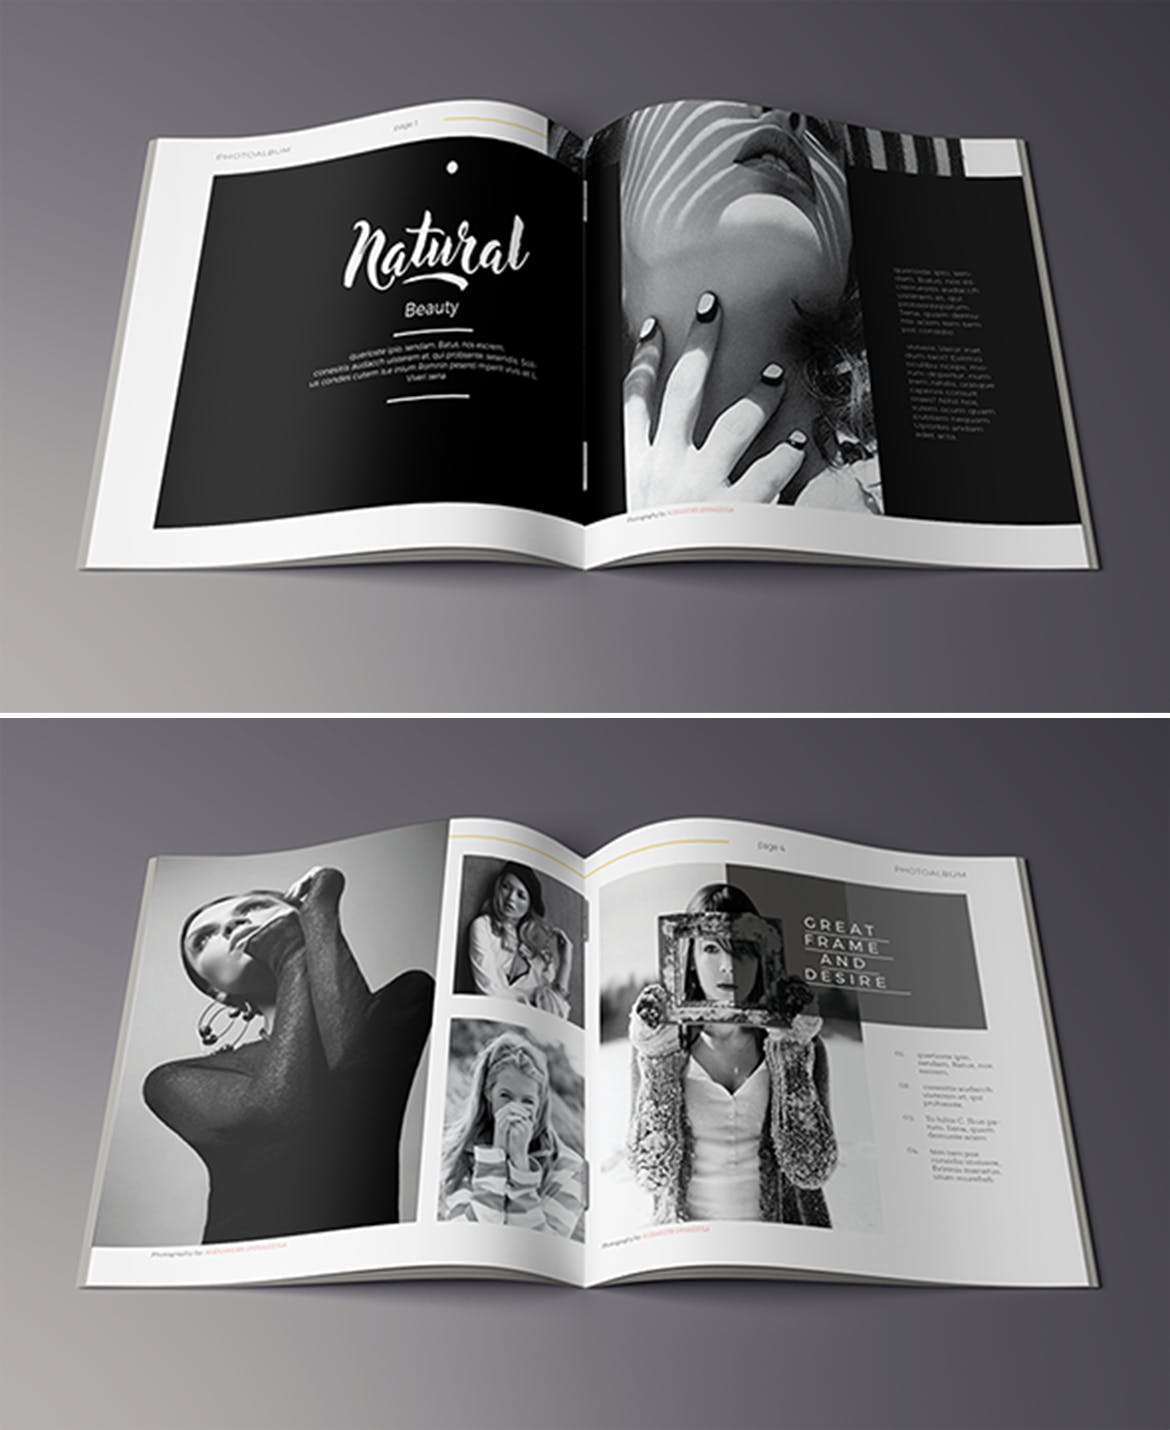 高端摄影作品集画册设计模板 Photography Album插图(2)